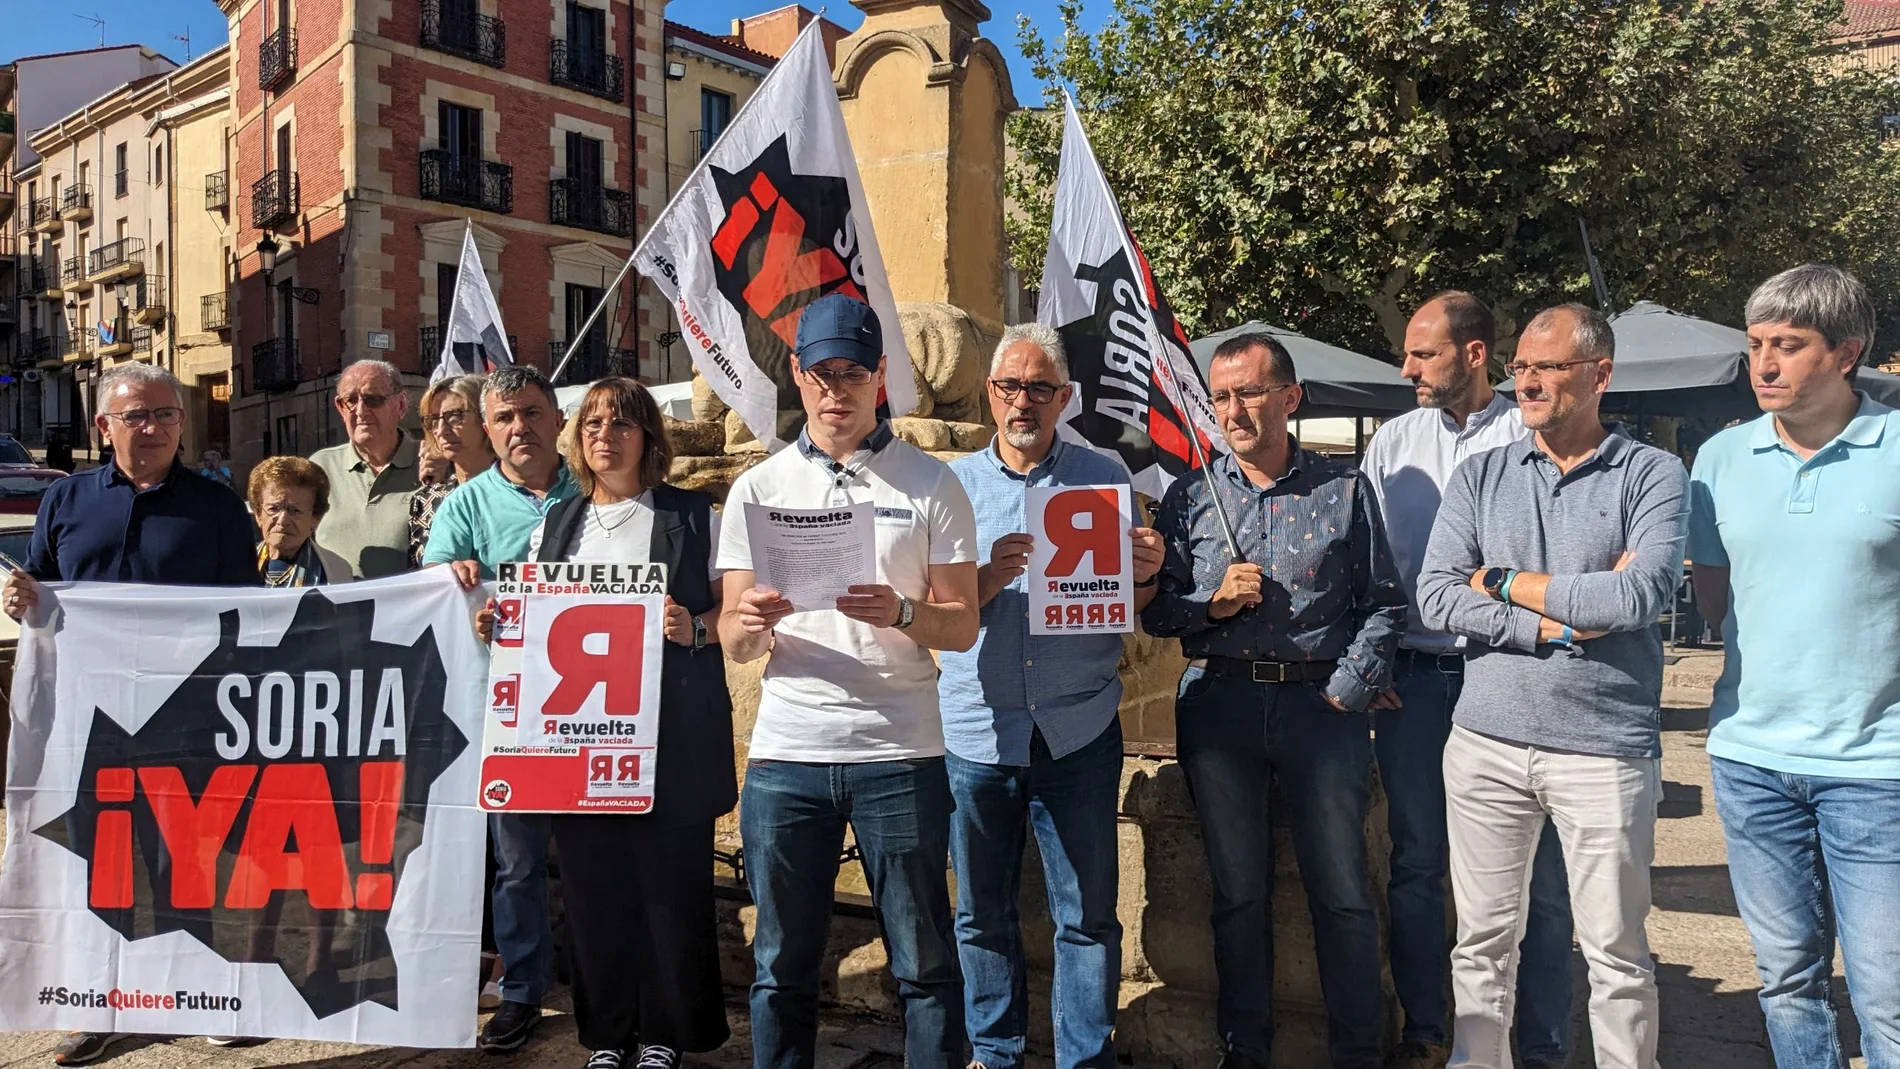 La España vaciada reclama "viviendas dignas" en los pueblos frente a la despoblación